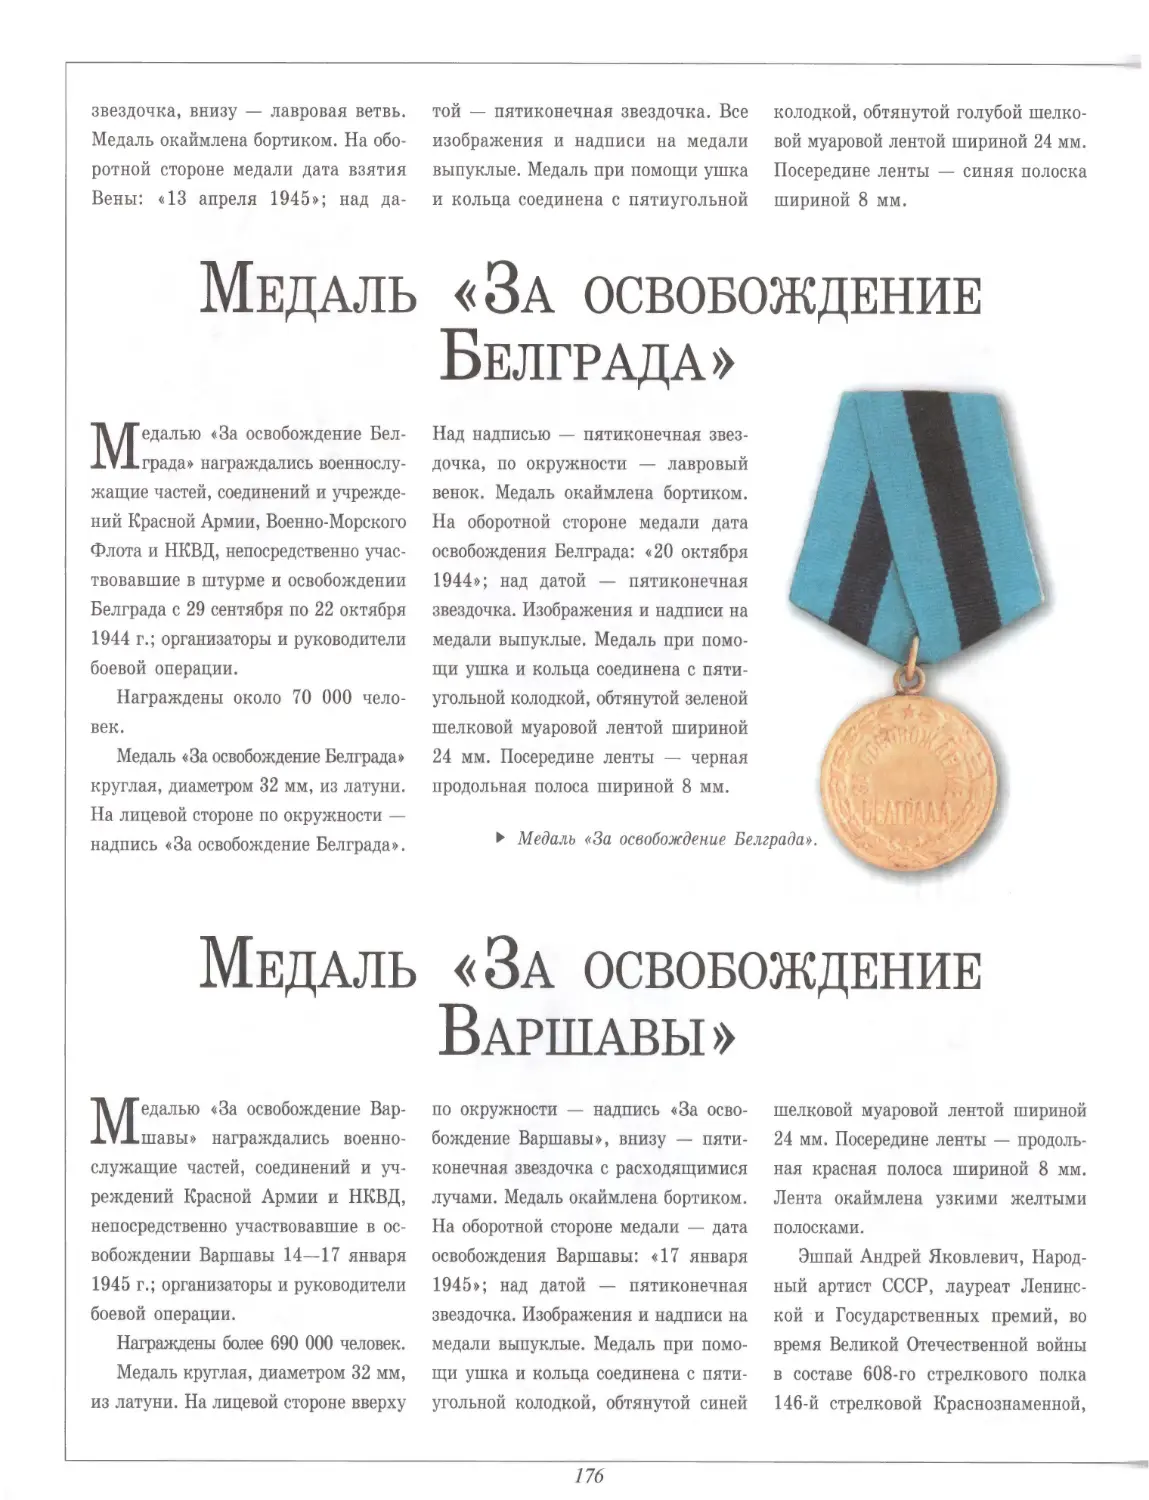 Медаль «За освобождение Белграда»
Медаль «За освобождение Варшавы»